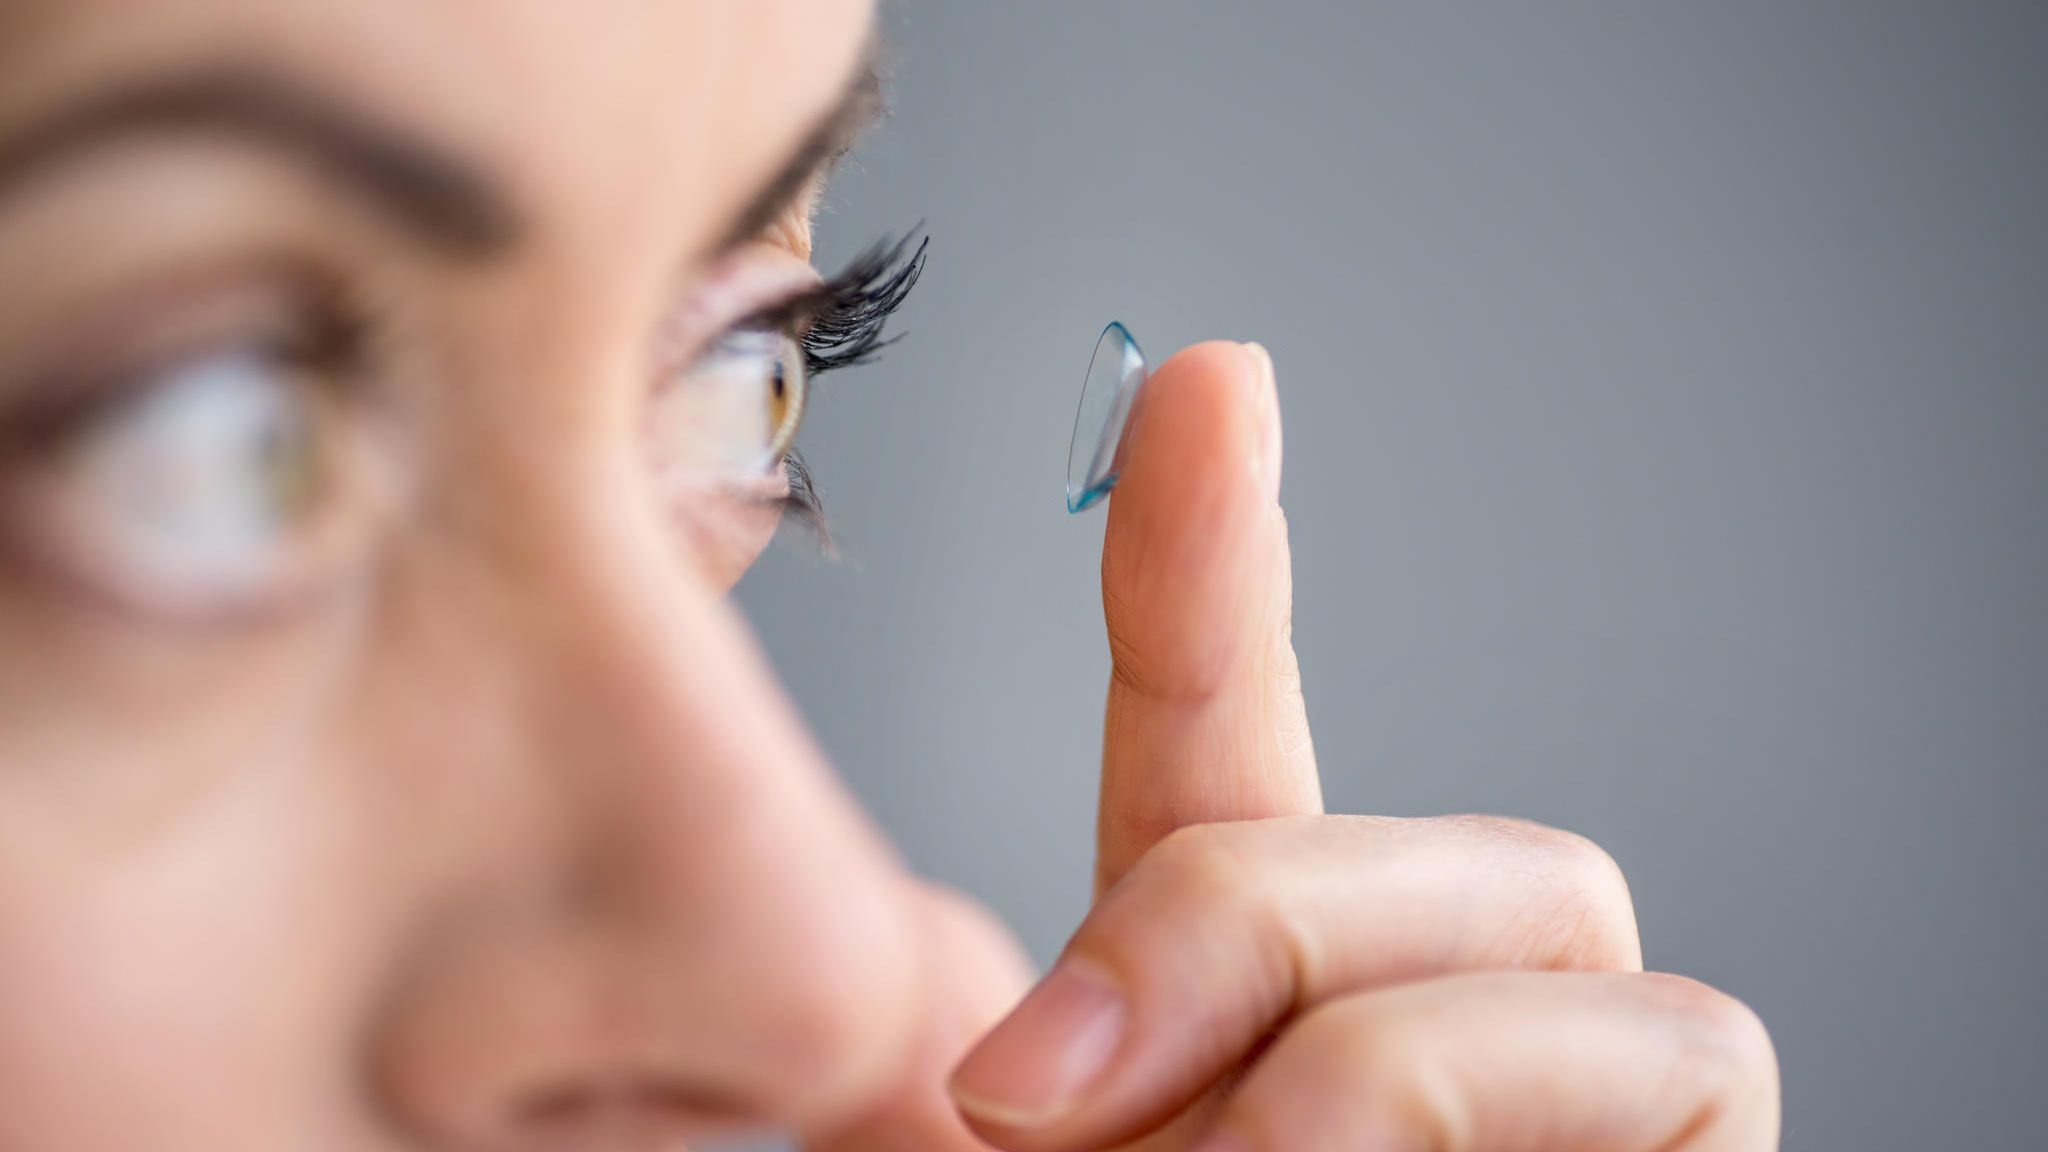 8 Kontaktlinsen-Ideen  kontaktlinsen, kontakt, kontaktlinsen